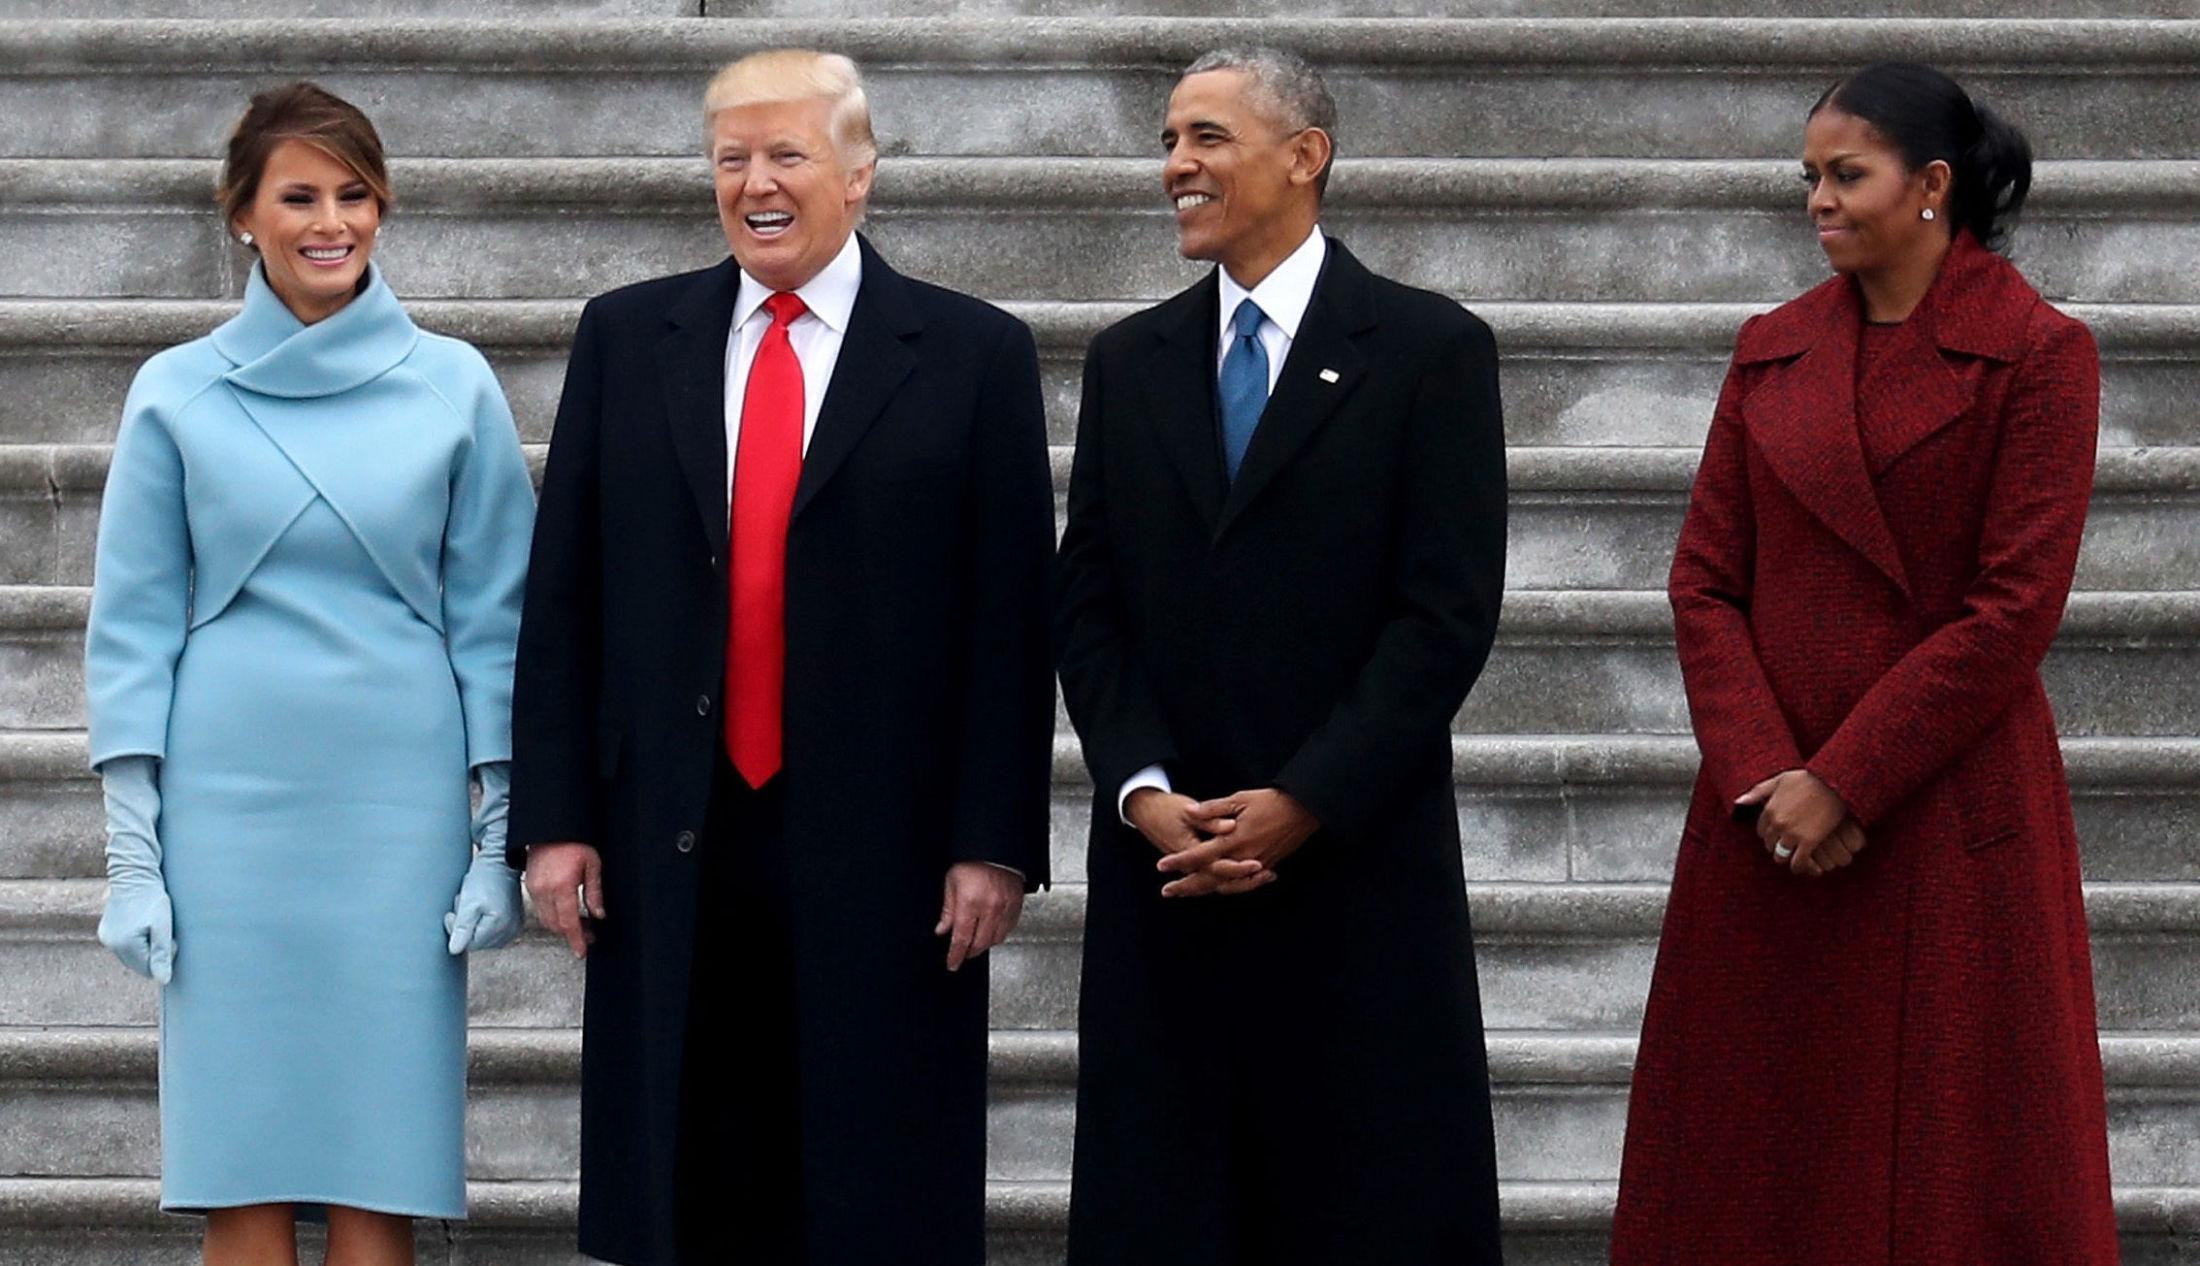 TAR OVER: Donald og Melania Trump sammen med det tidligere presidentparet Barack og Michelle Obama i trappen på Capitol Hill i dag. Foto: REUTERS/Rob Carr/Pool